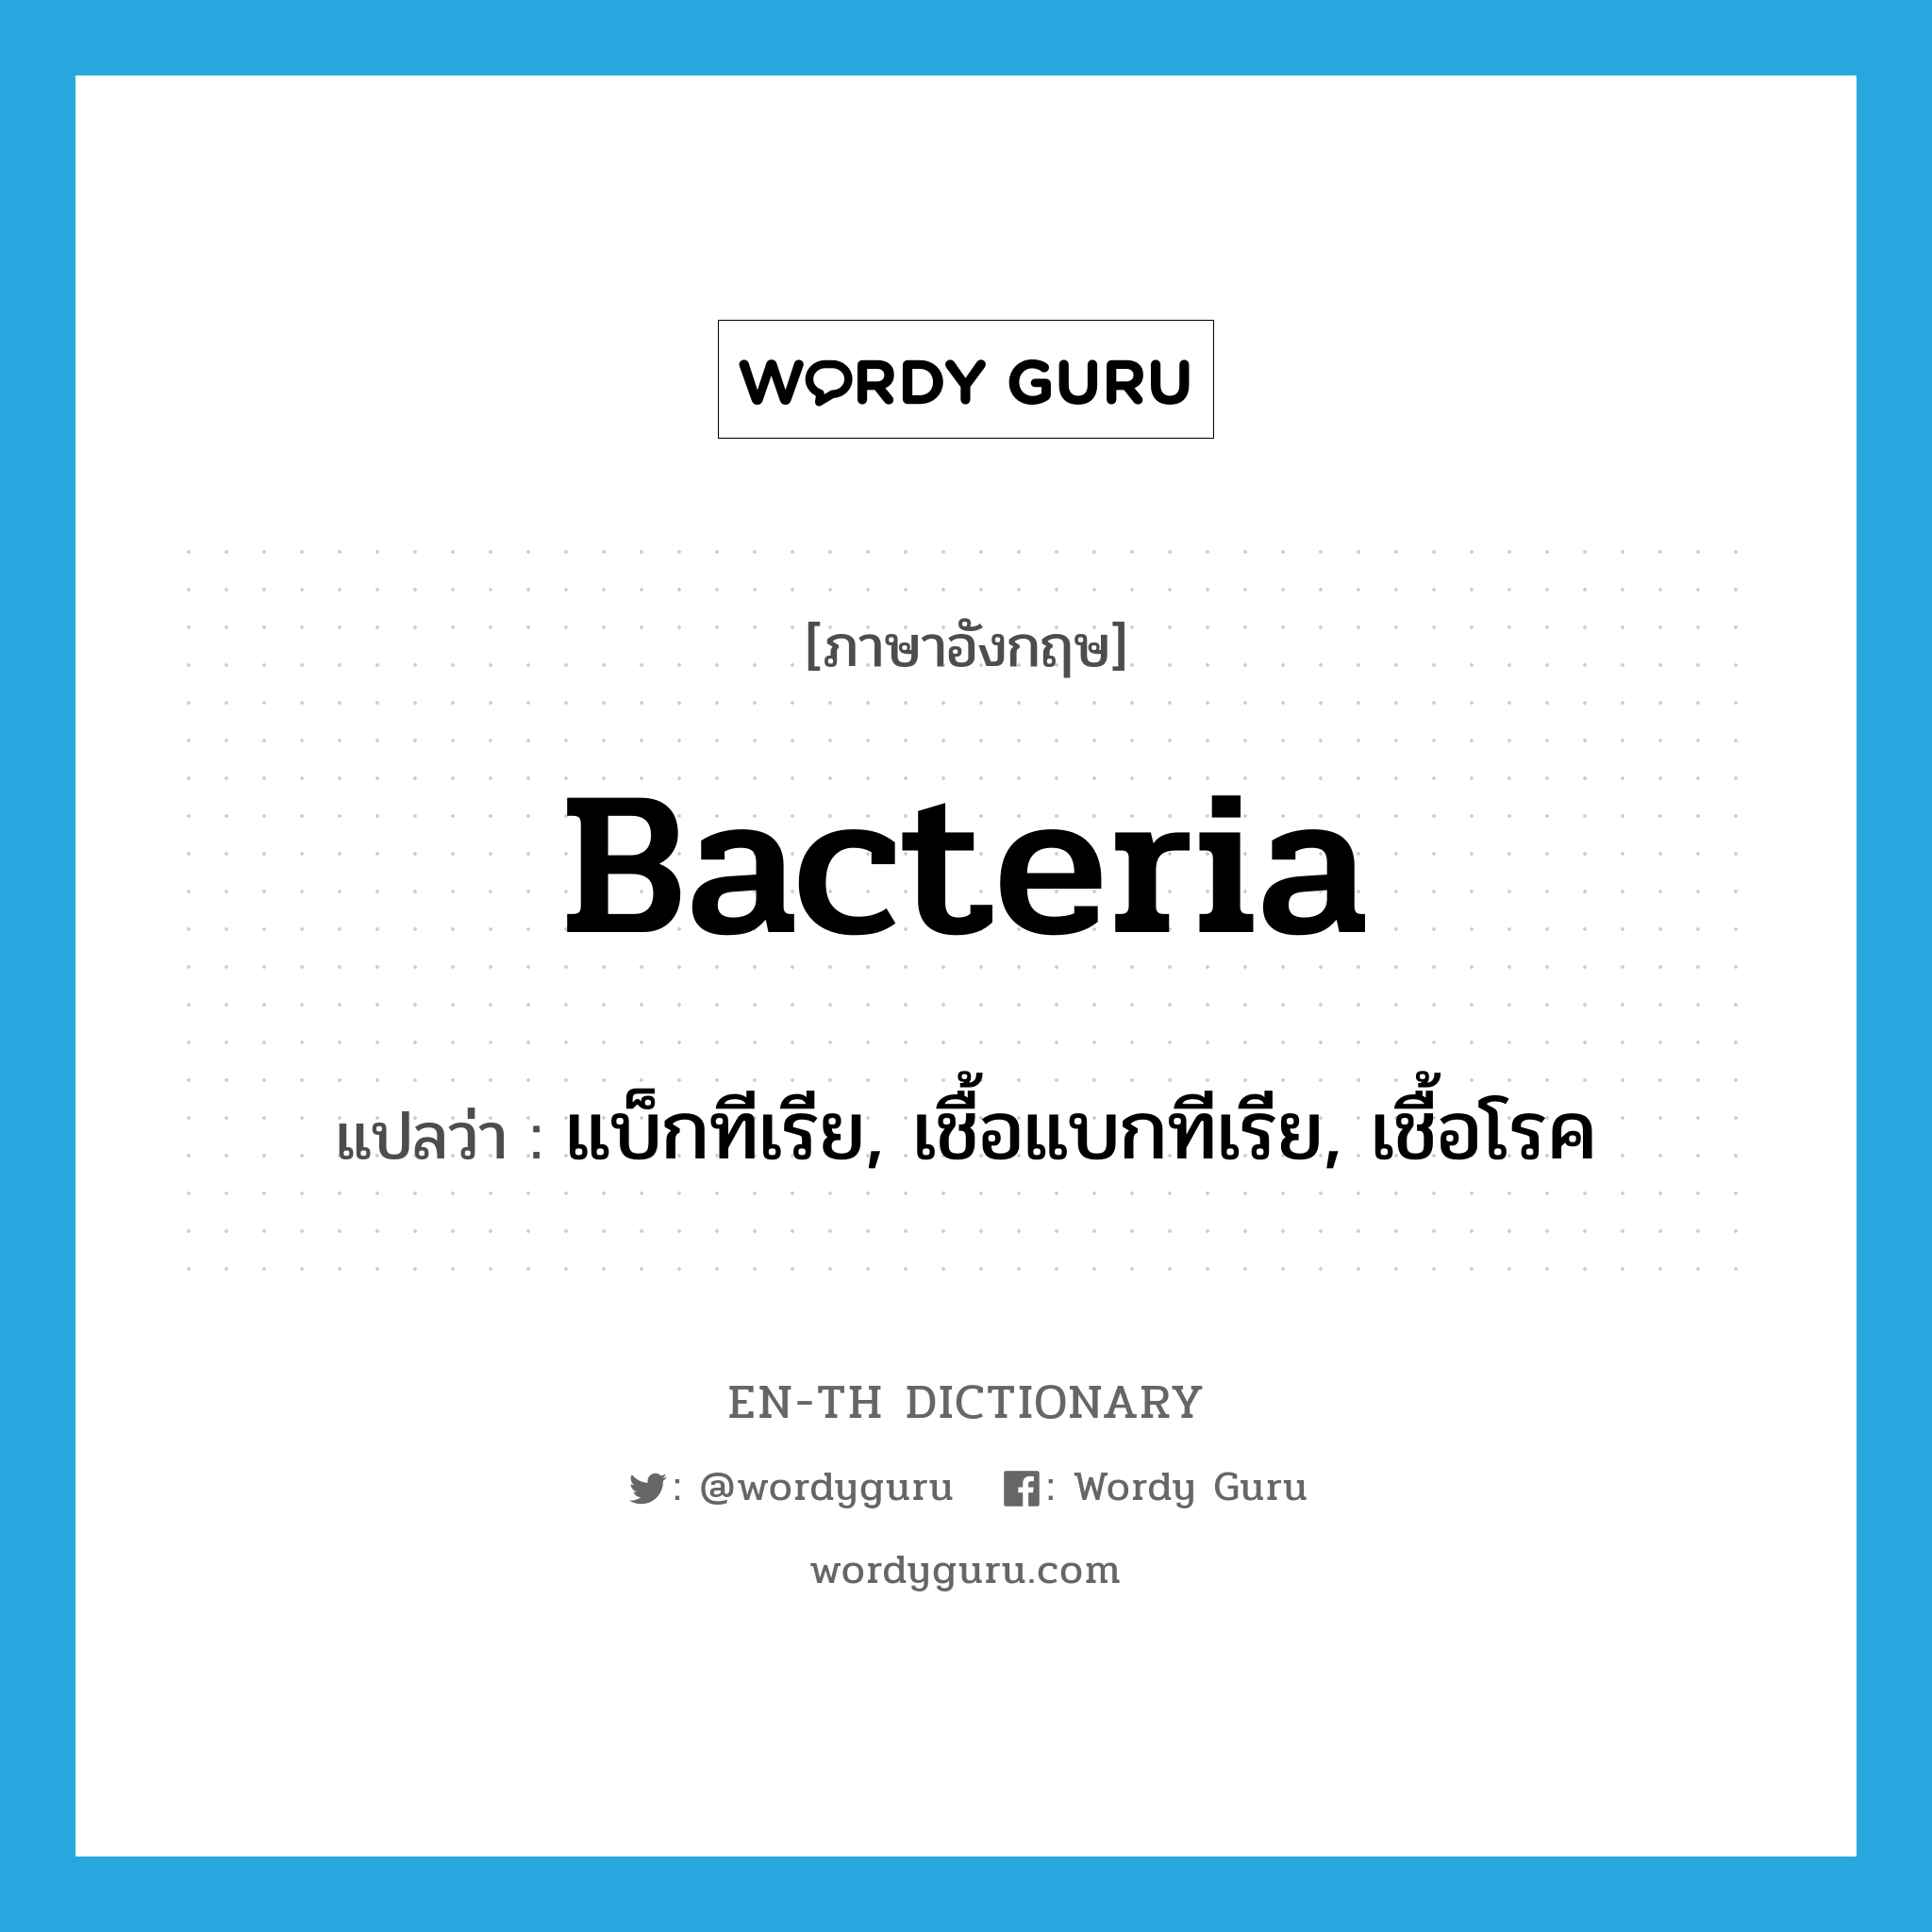 แบ็กทีเรีย, เชื้อแบกทีเรีย, เชื้อโรค ภาษาอังกฤษ?, คำศัพท์ภาษาอังกฤษ แบ็กทีเรีย, เชื้อแบกทีเรีย, เชื้อโรค แปลว่า bacteria ประเภท N หมวด N